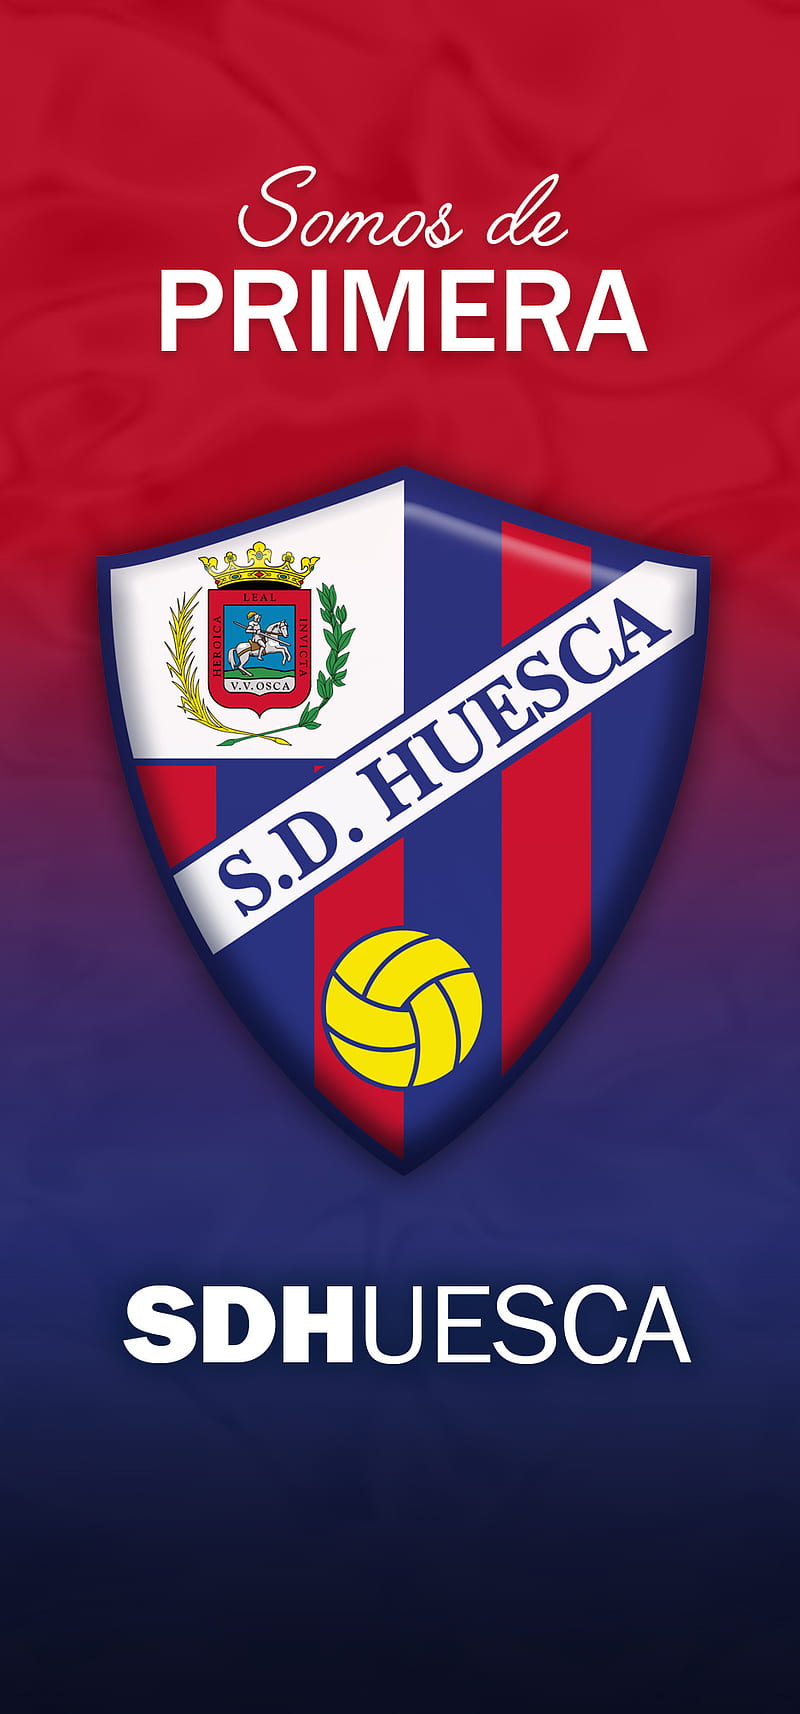 HUESCA DE PRIMERA, ascenso, de primera, shield, football, sd huesca, HD phone wallpaper